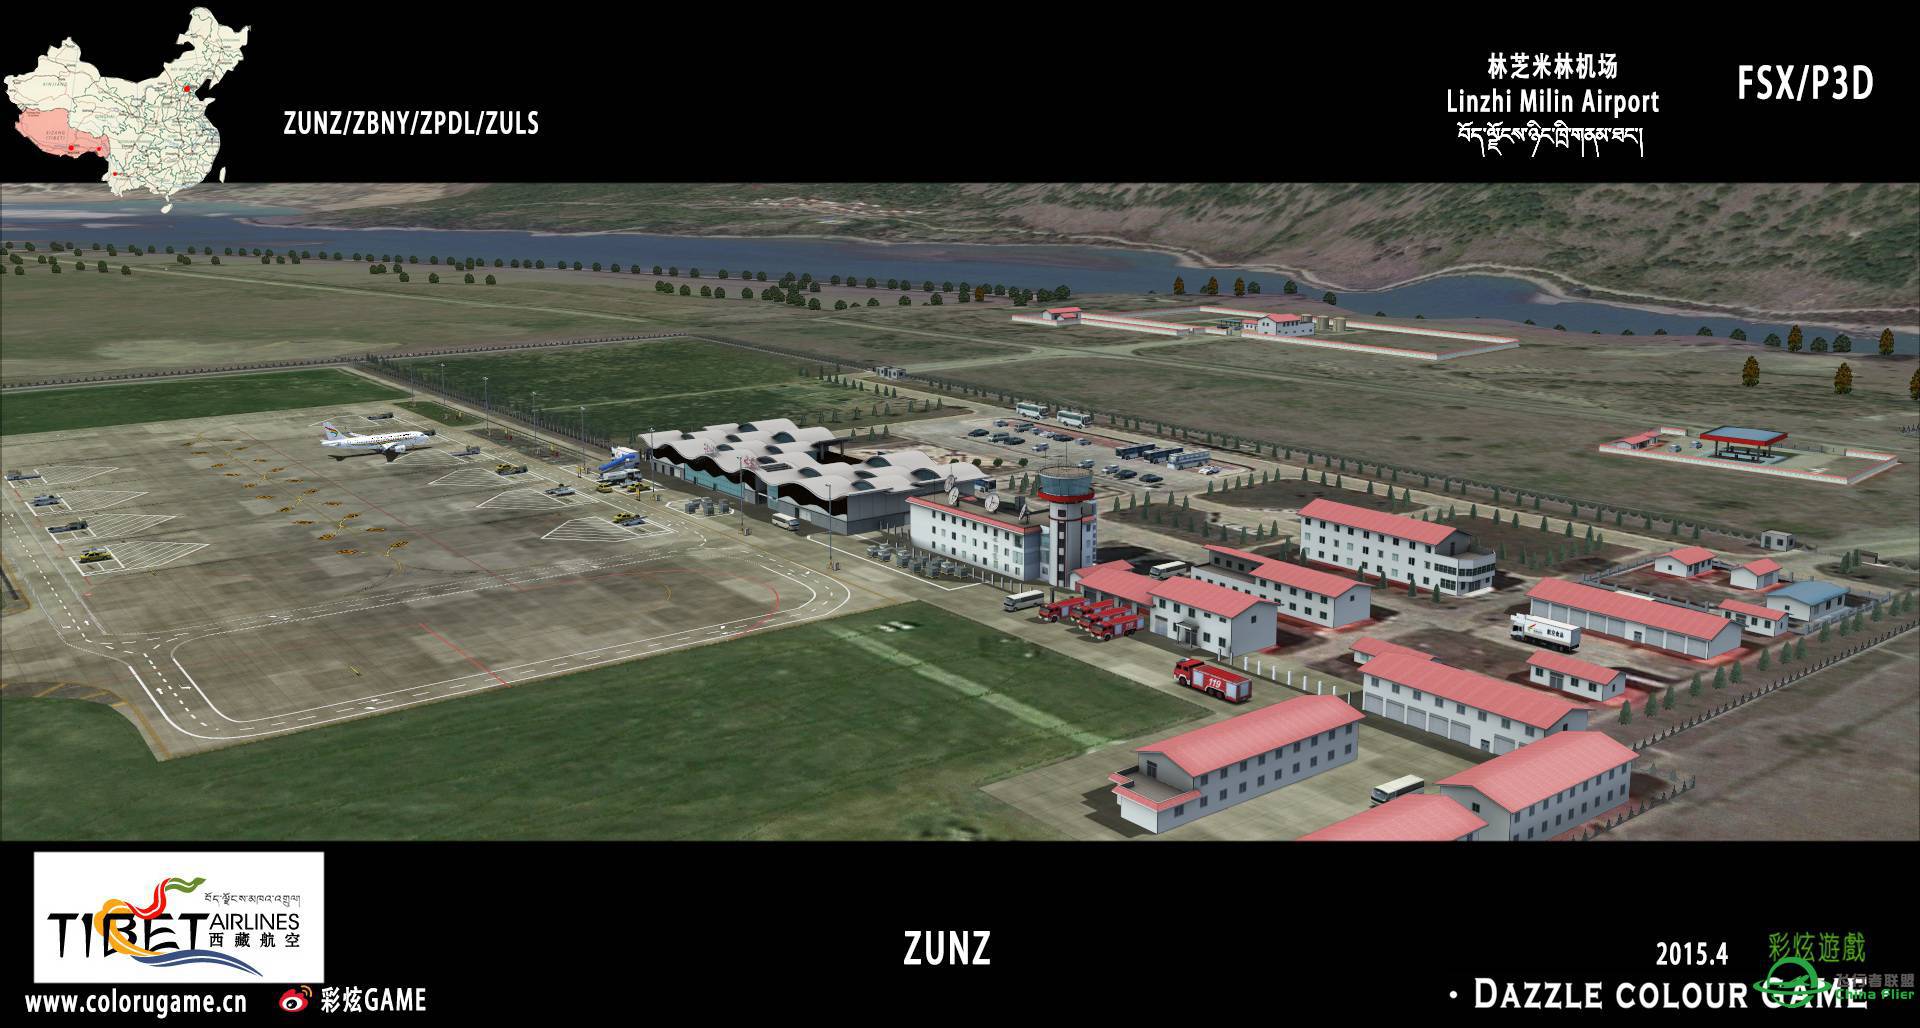 彩炫地景：林芝米林机场（ZUNZ）正式发布！-664 